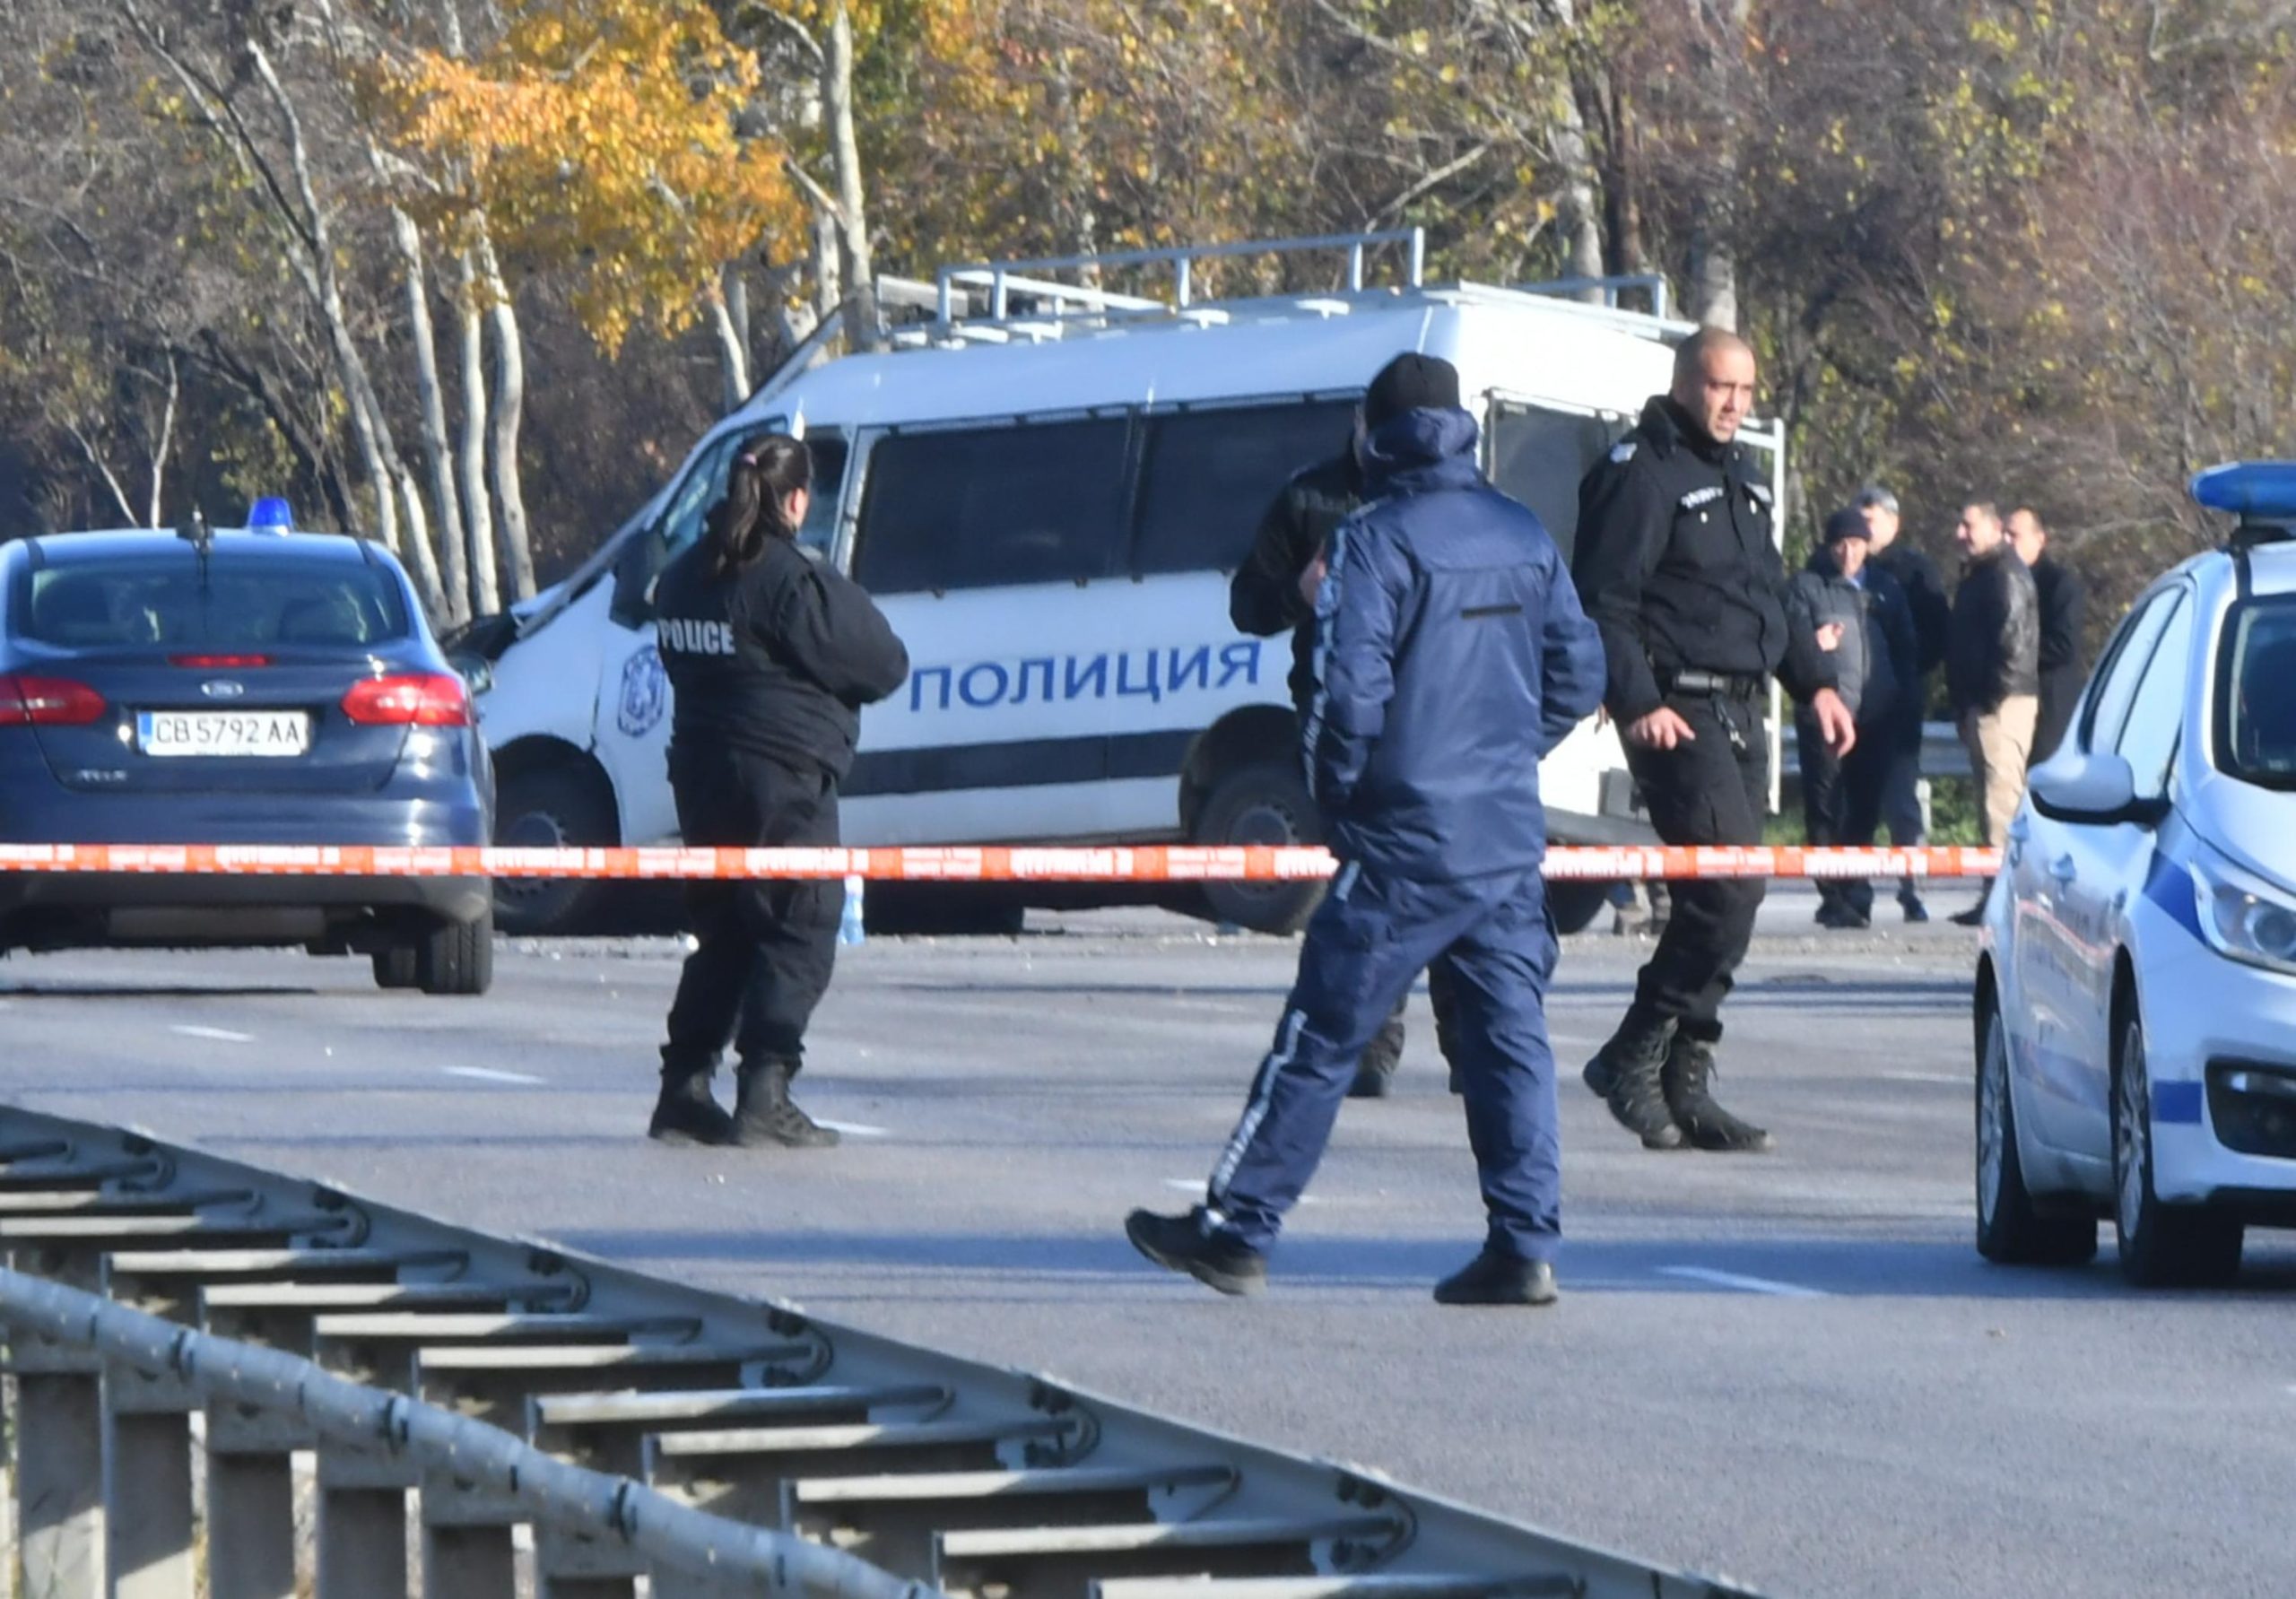 Служители на РУ Севлиево задържаха мъж, стрелял по автомобил. Сигналът